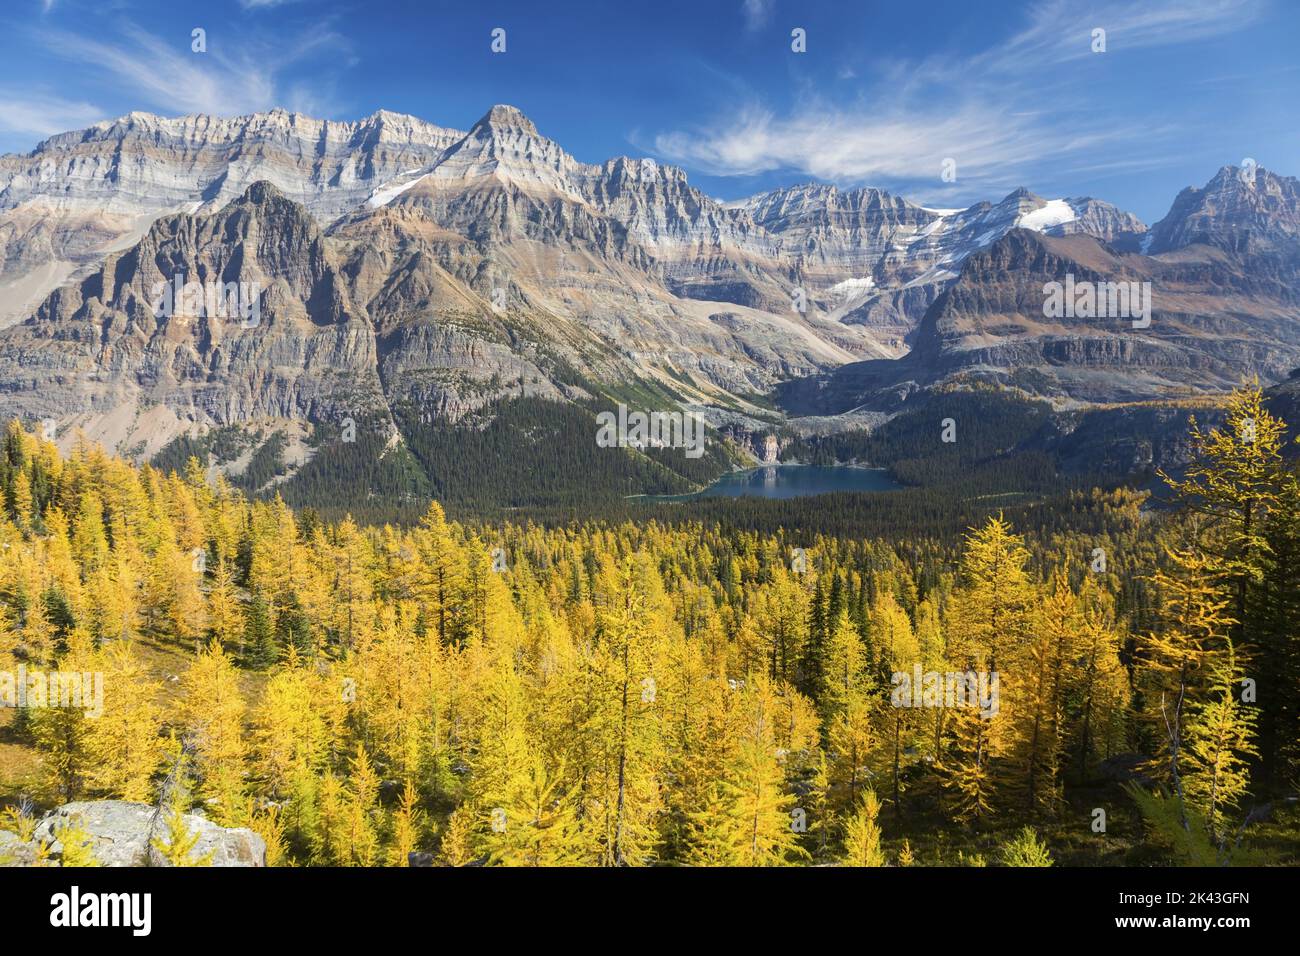 Bosque de alerces amarillo dorado y picos canadienses de las Montañas Rocosas. Paisaje escénico del otoño Ver la cuenca alpina del lago O'Hara, Parque Nacional Yoho BC Canadá Foto de stock